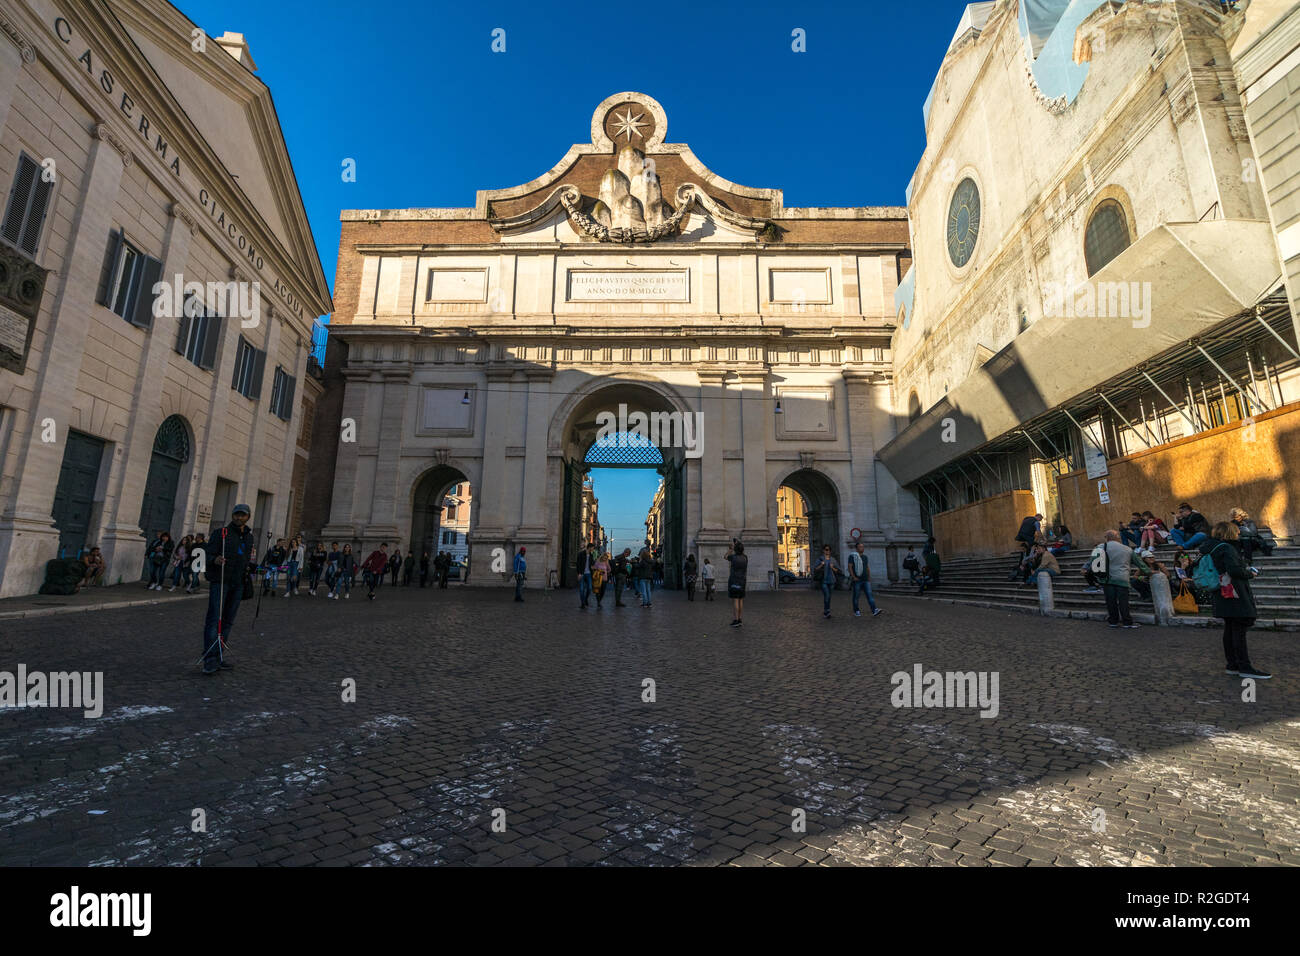 11/09/2018 - Rome, Italie : Dimanche après-midi la Porta del popolo, Piazzale Flaminio et Caserma Giacomo Acqua, vu de la Piazza del popolo. Beaucoup de toursit Banque D'Images